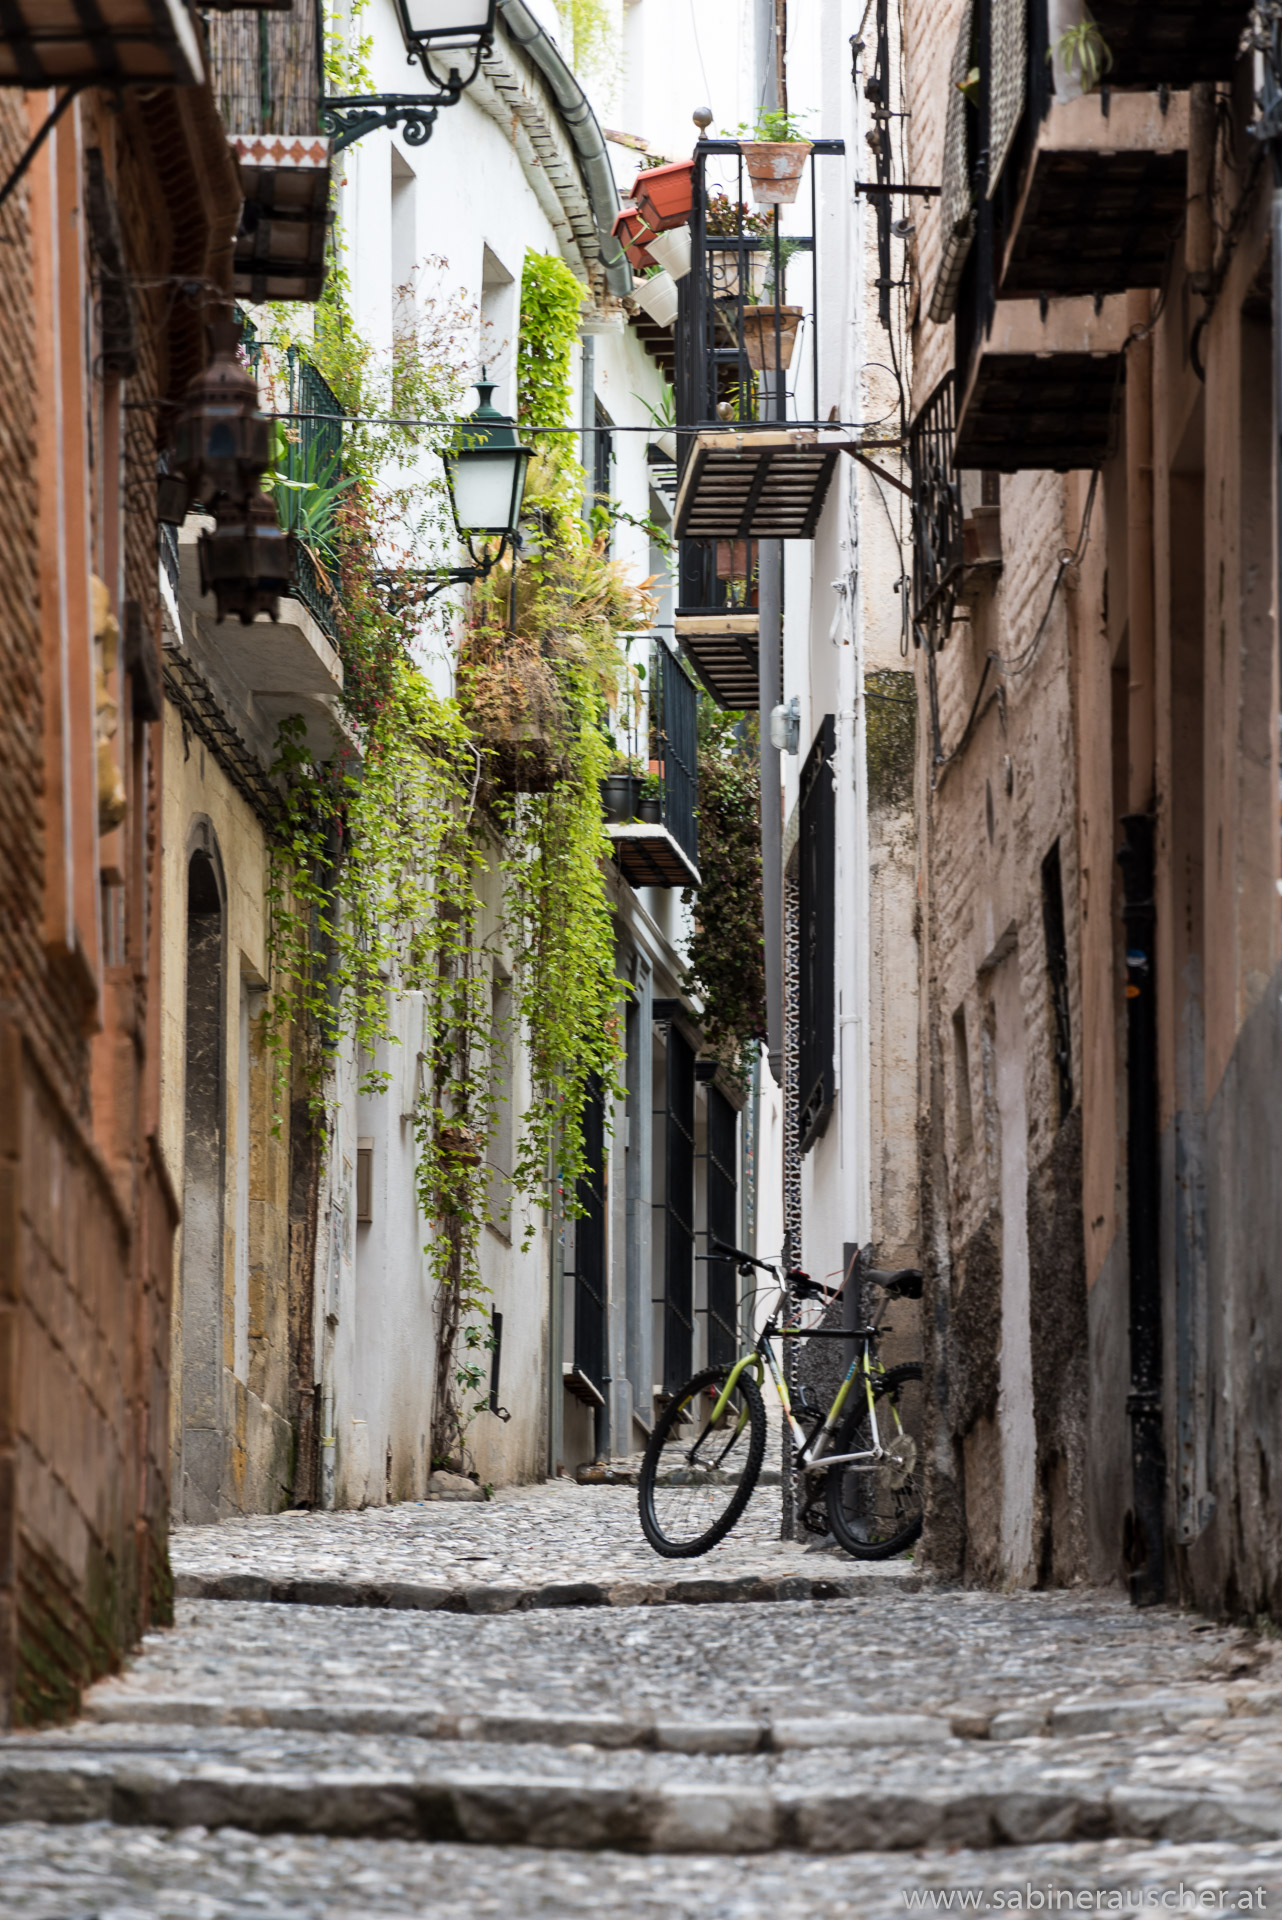 another alley in the old town of Granada | eine von vielen schmalen Gassen der Altstadt von Granada